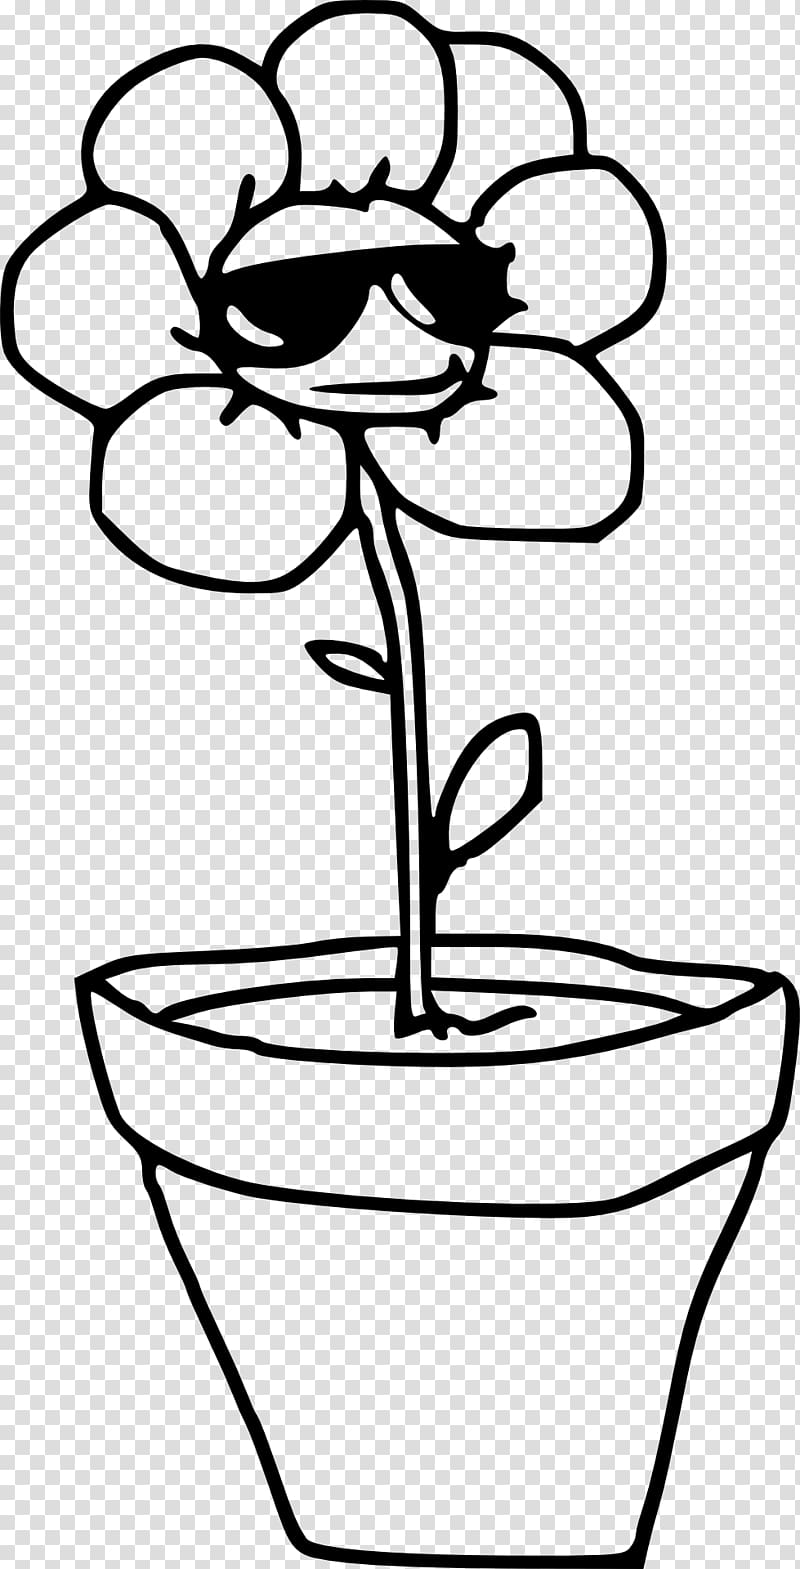 Flowerpot , plant pot transparent background PNG clipart